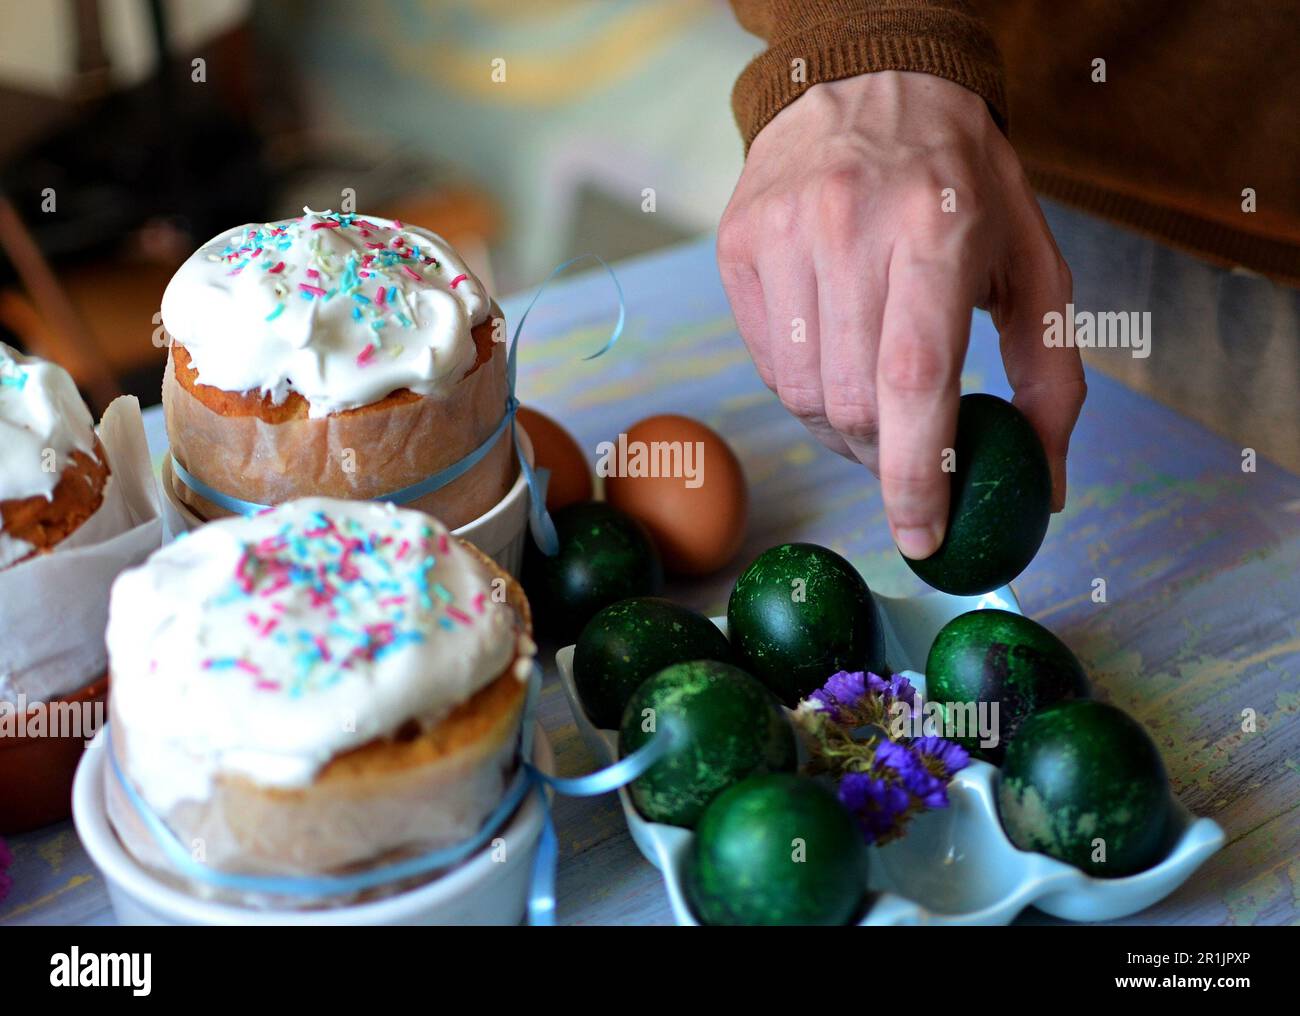 Trois gâteaux de Pâques pour Pâques sur la table. Œufs traditionnels peints sur un support. Main de l'homme tenant un œuf de pâques Banque D'Images